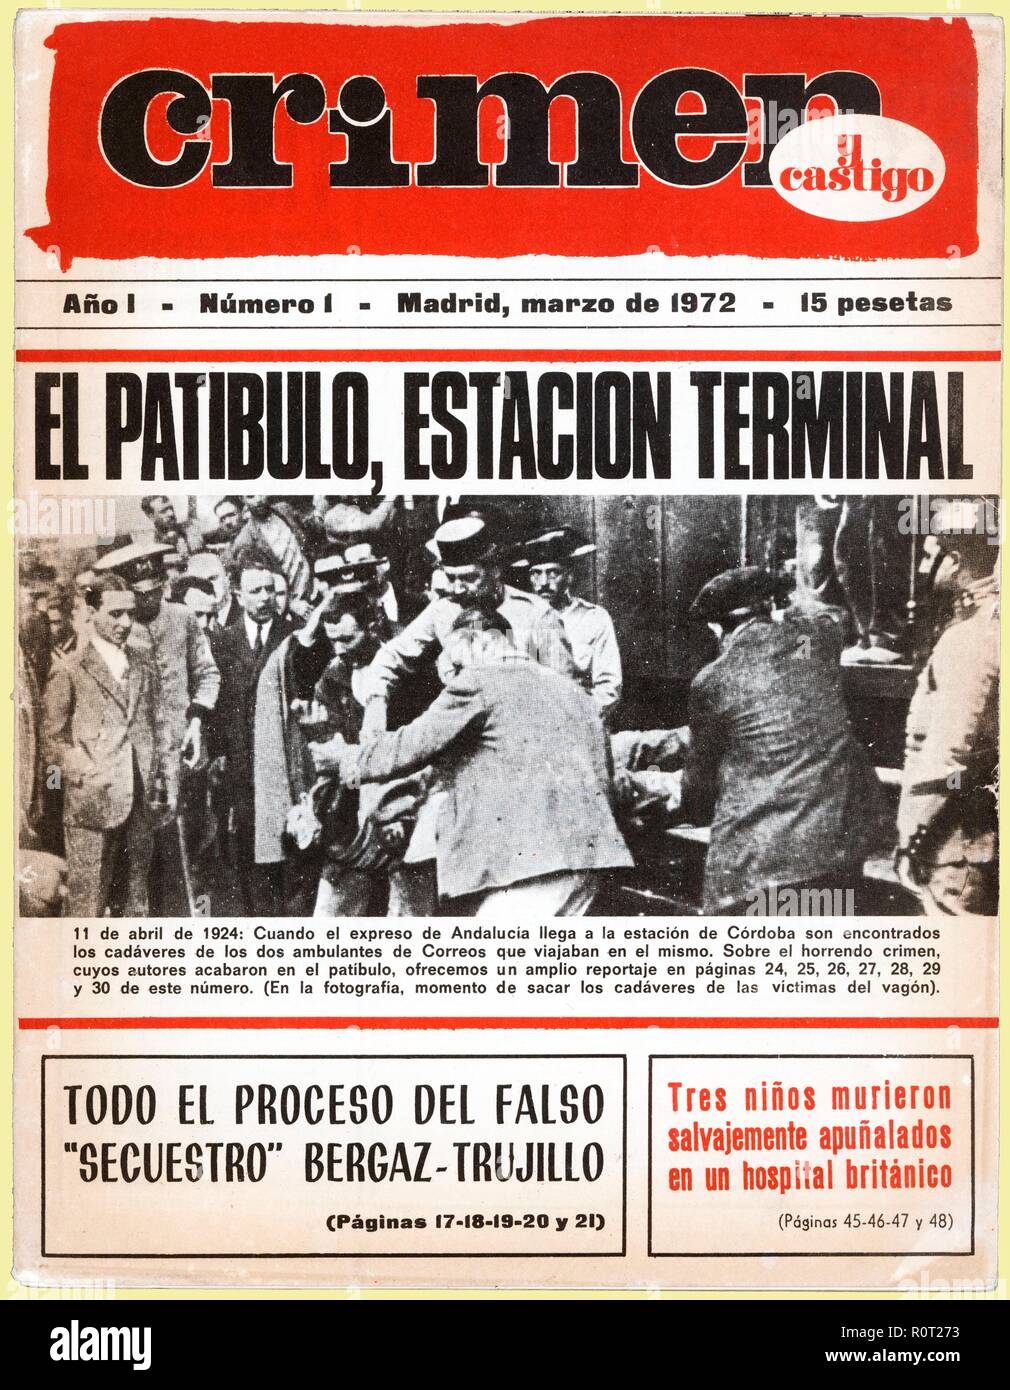 Portada de la revista de sucesos Crimen y castigo, año uno, número uno. Madrid, año 1972. Stock Photo